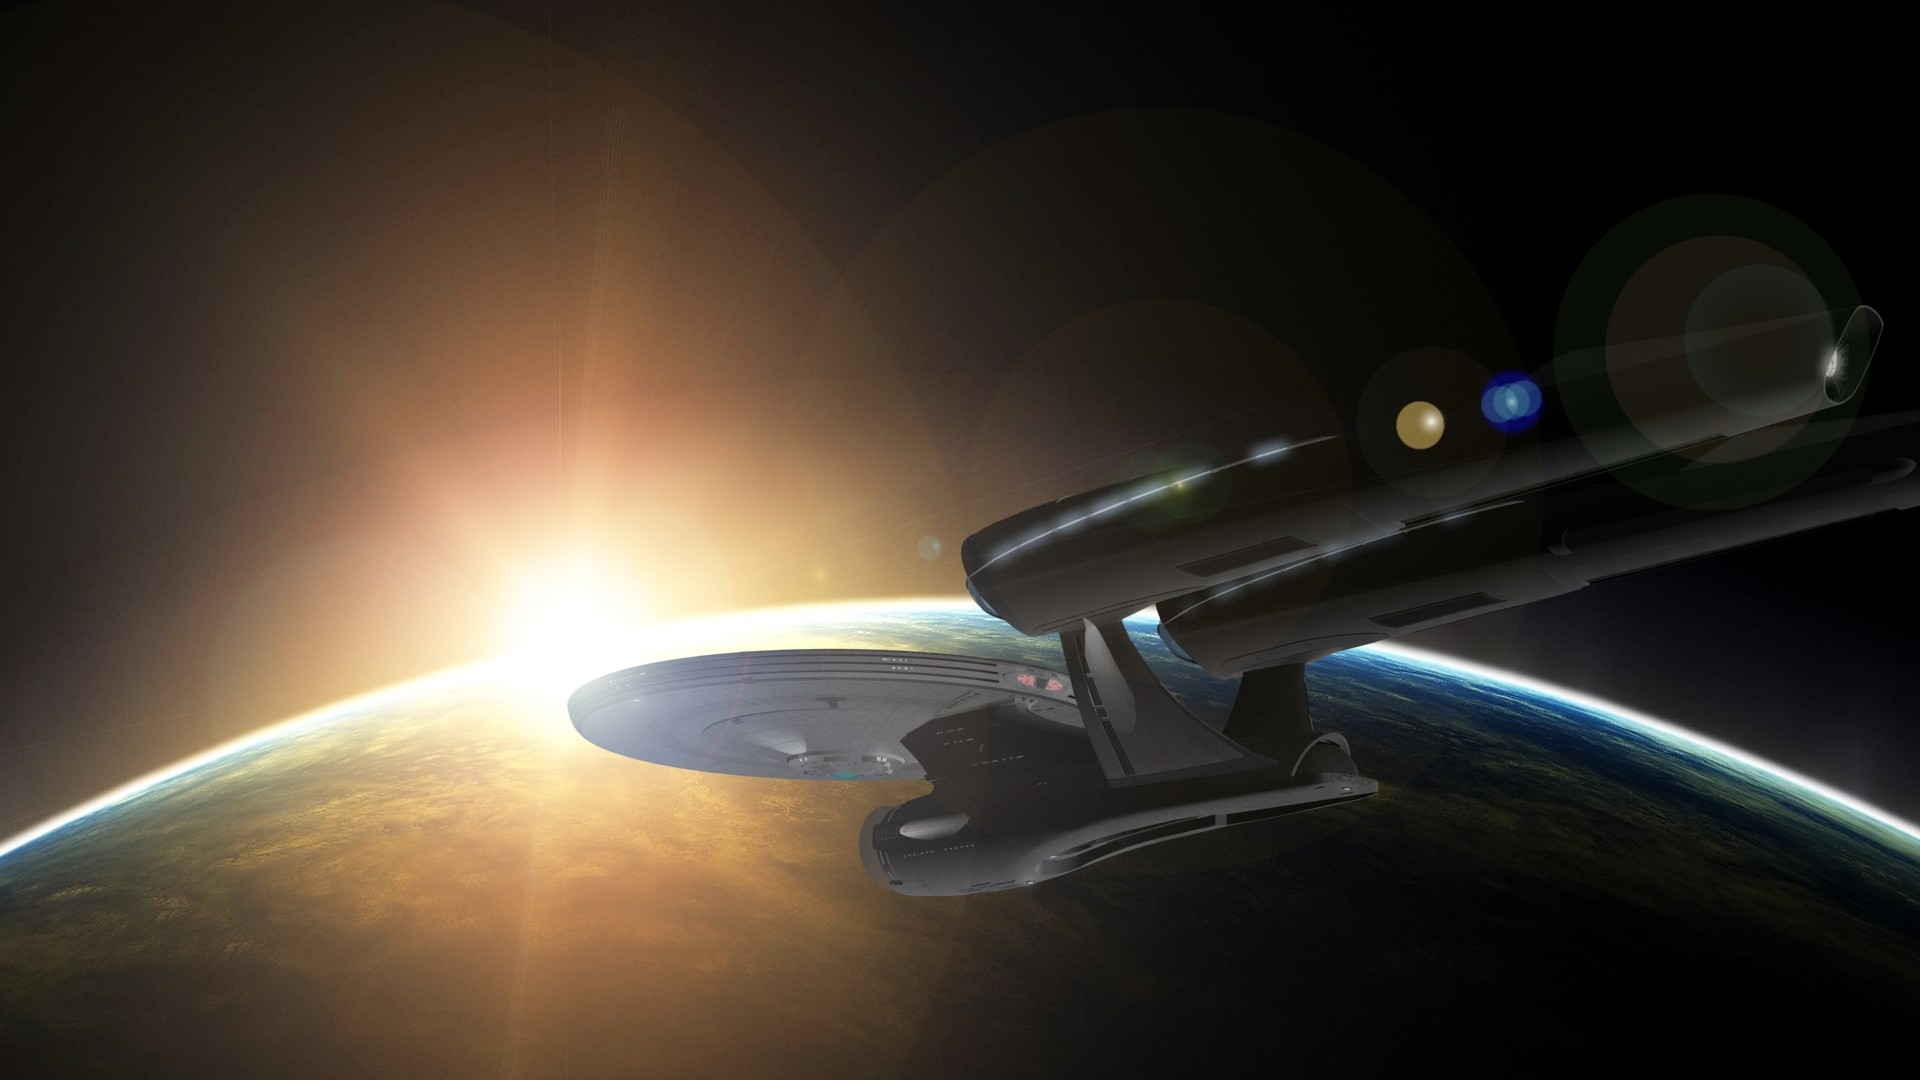 Space Star Trek Uss Enterprise Spaceship Star Trek Kelvin Timeline